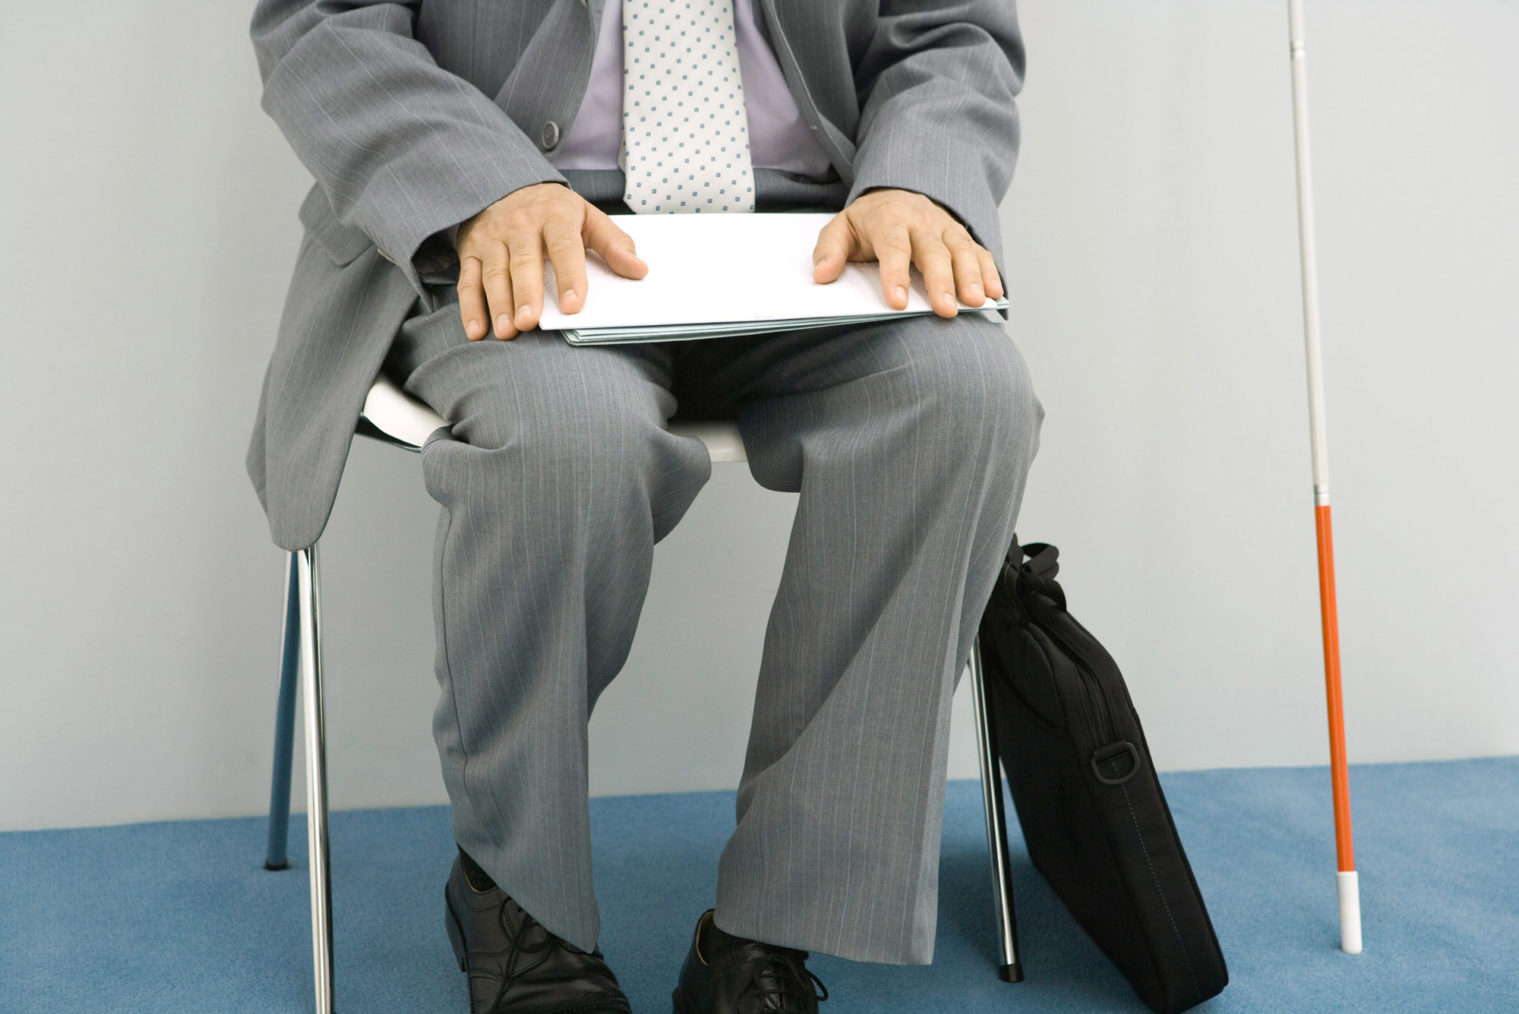 Nærbilde av mann i dress som sitter og venter med papirene sine i fanget. Ved siden av ham har han plassert en hvit stokk.